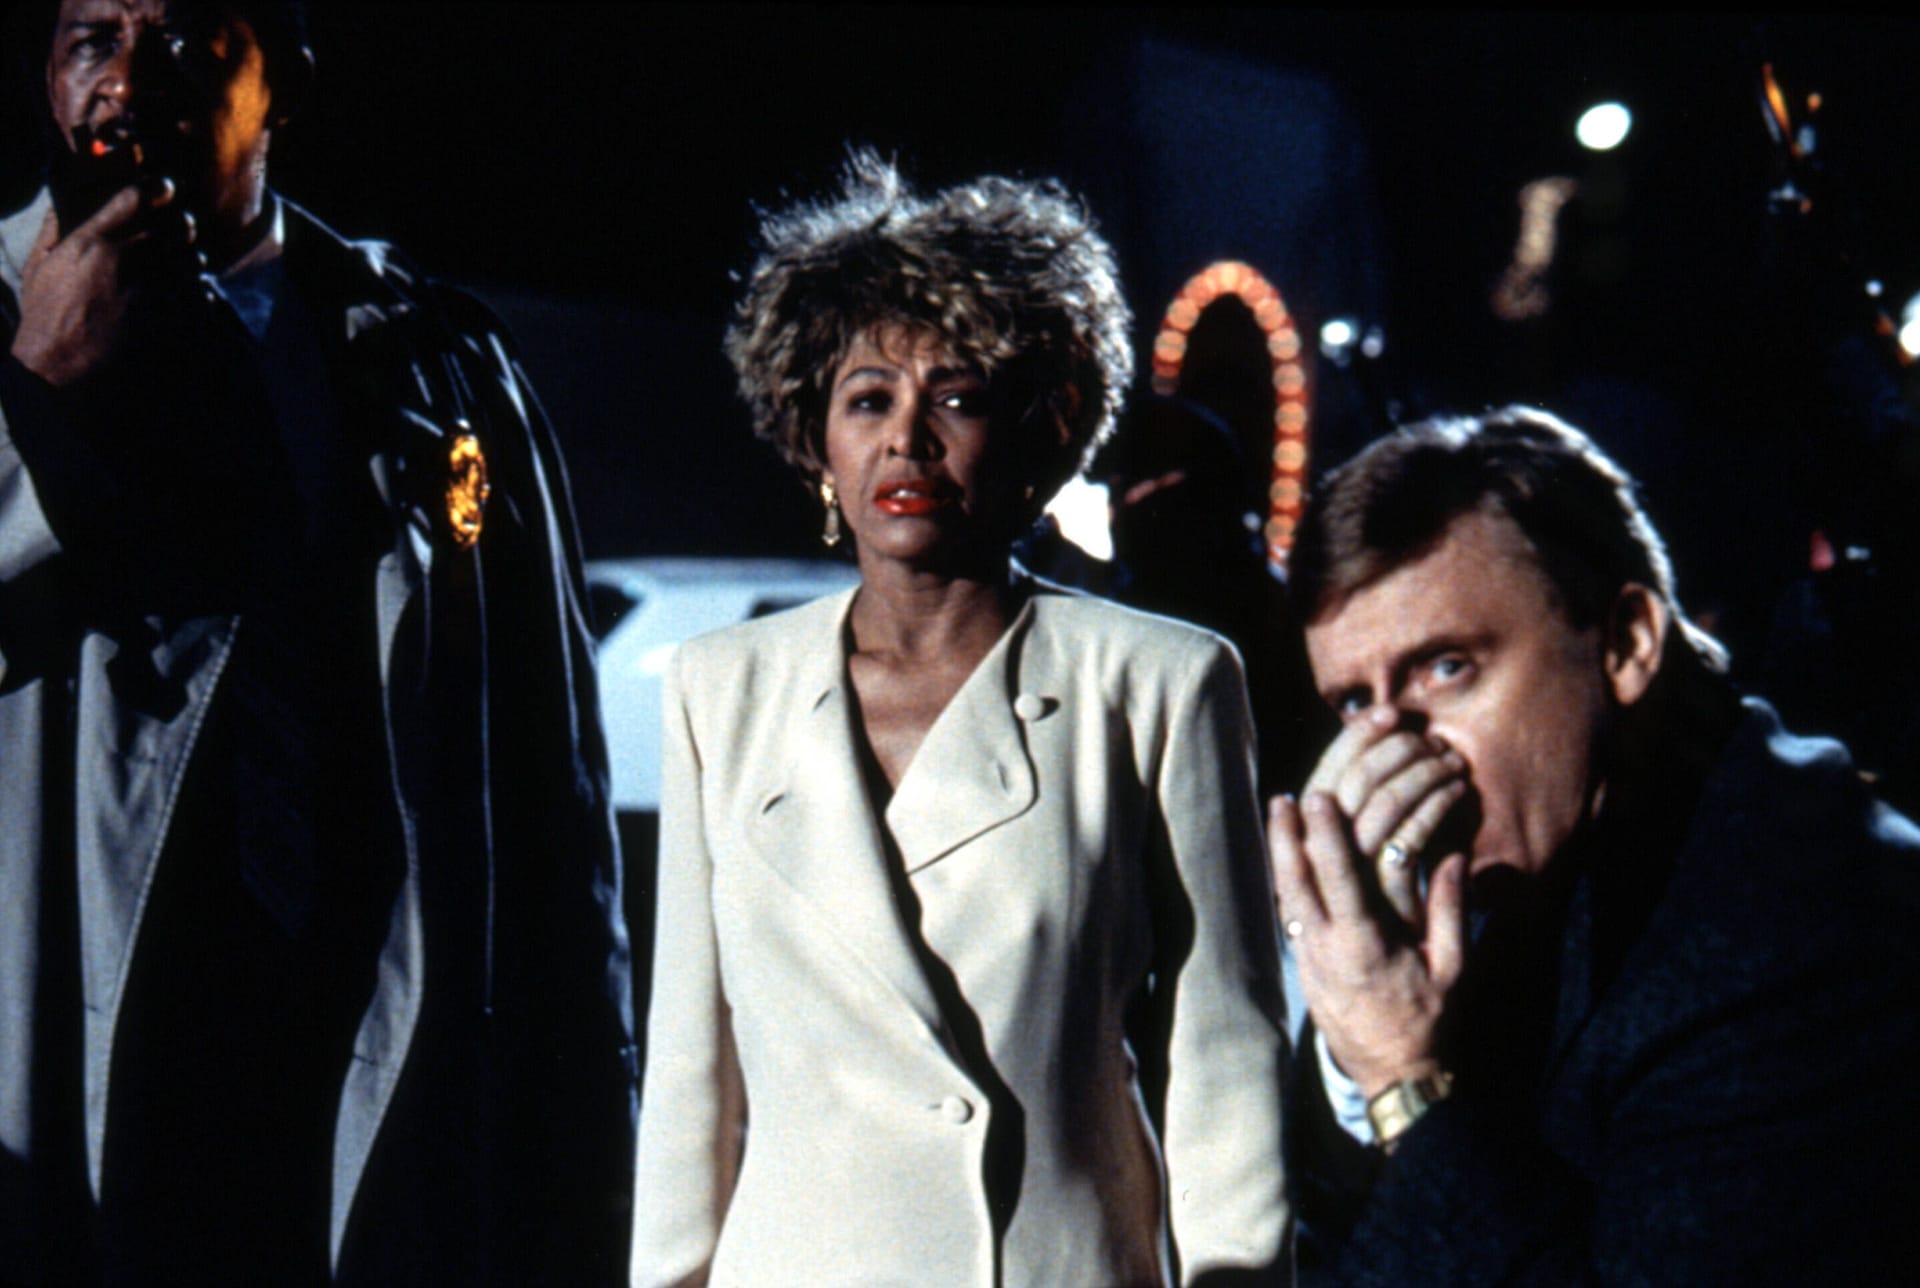 Immer wieder trat die Sängerin auch für Filme vor die Kamera: Hier 1993 in "Last Action Hero" von John McTiernan.